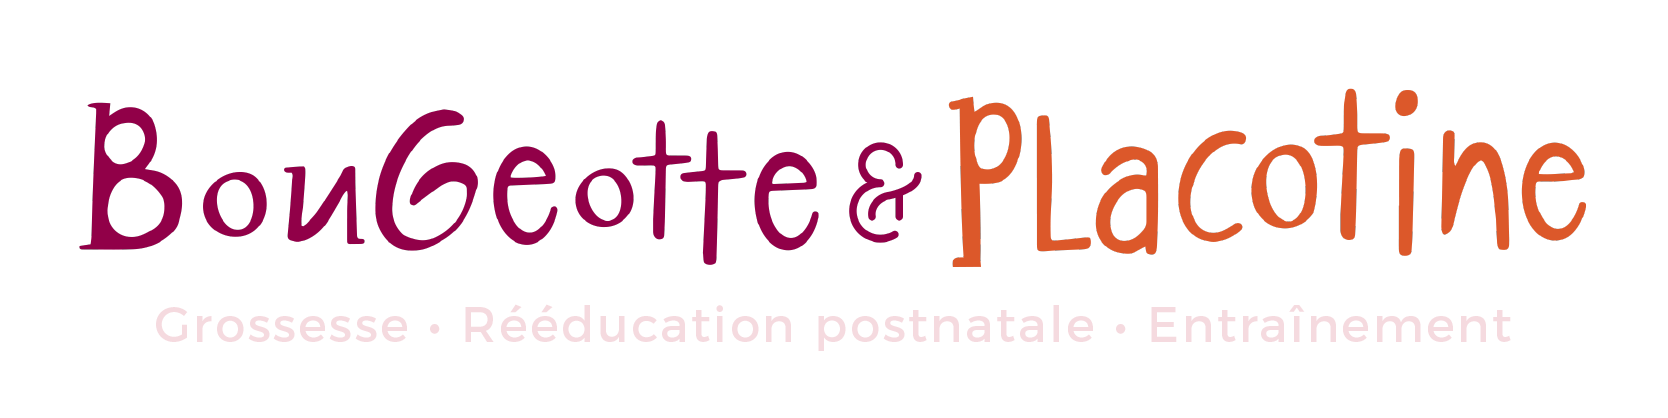 Logo Bougeotte & Placotine - descriptif